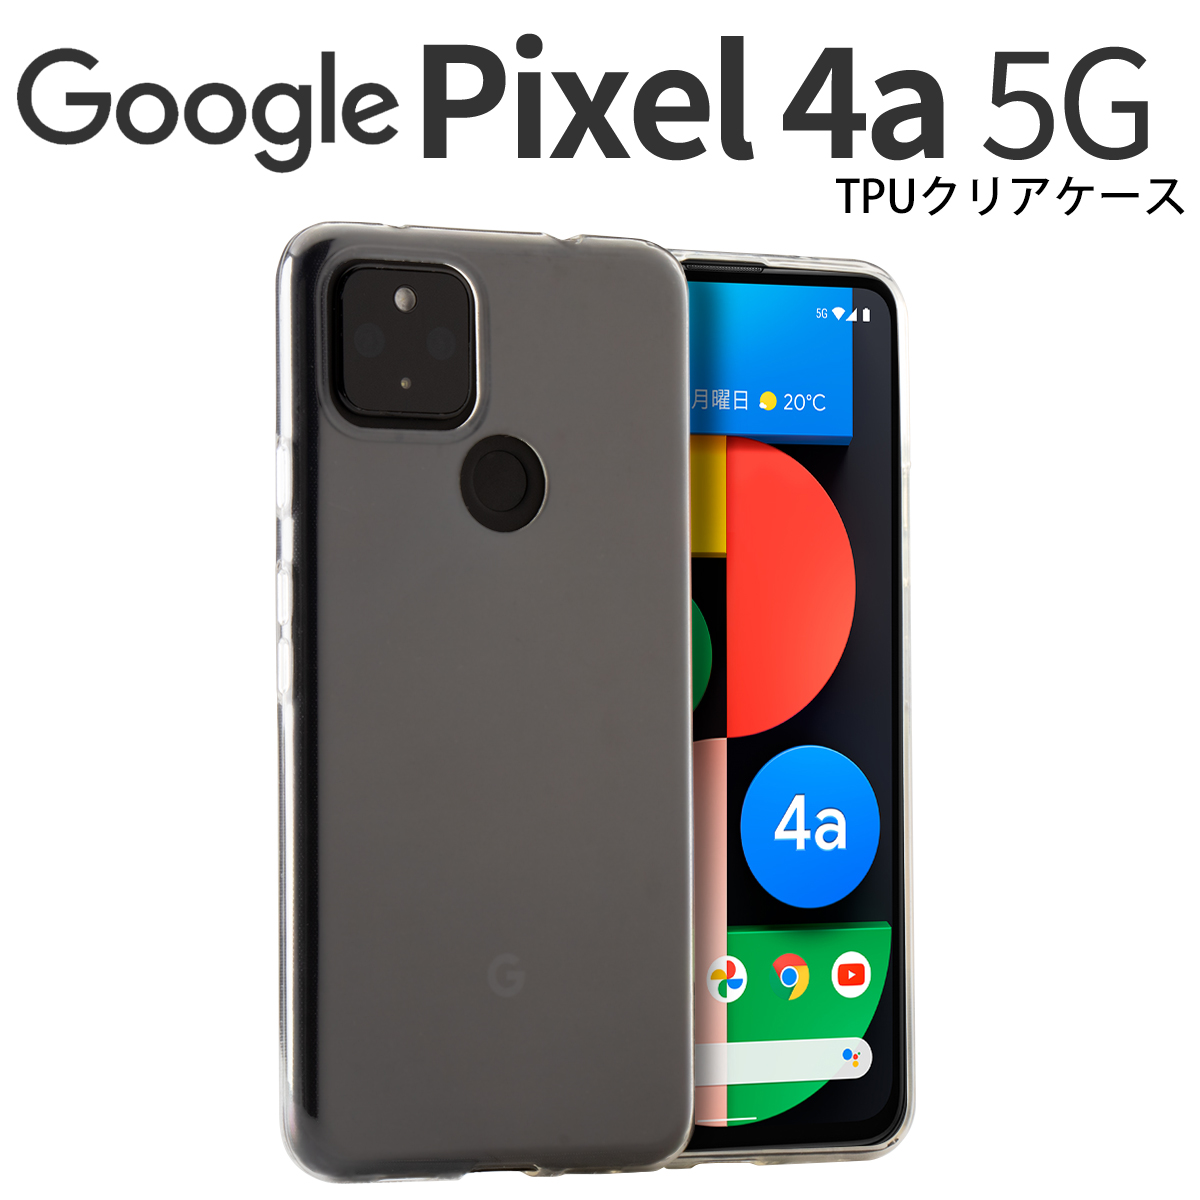 Google Pixel 4a 5G TPU クリアケース